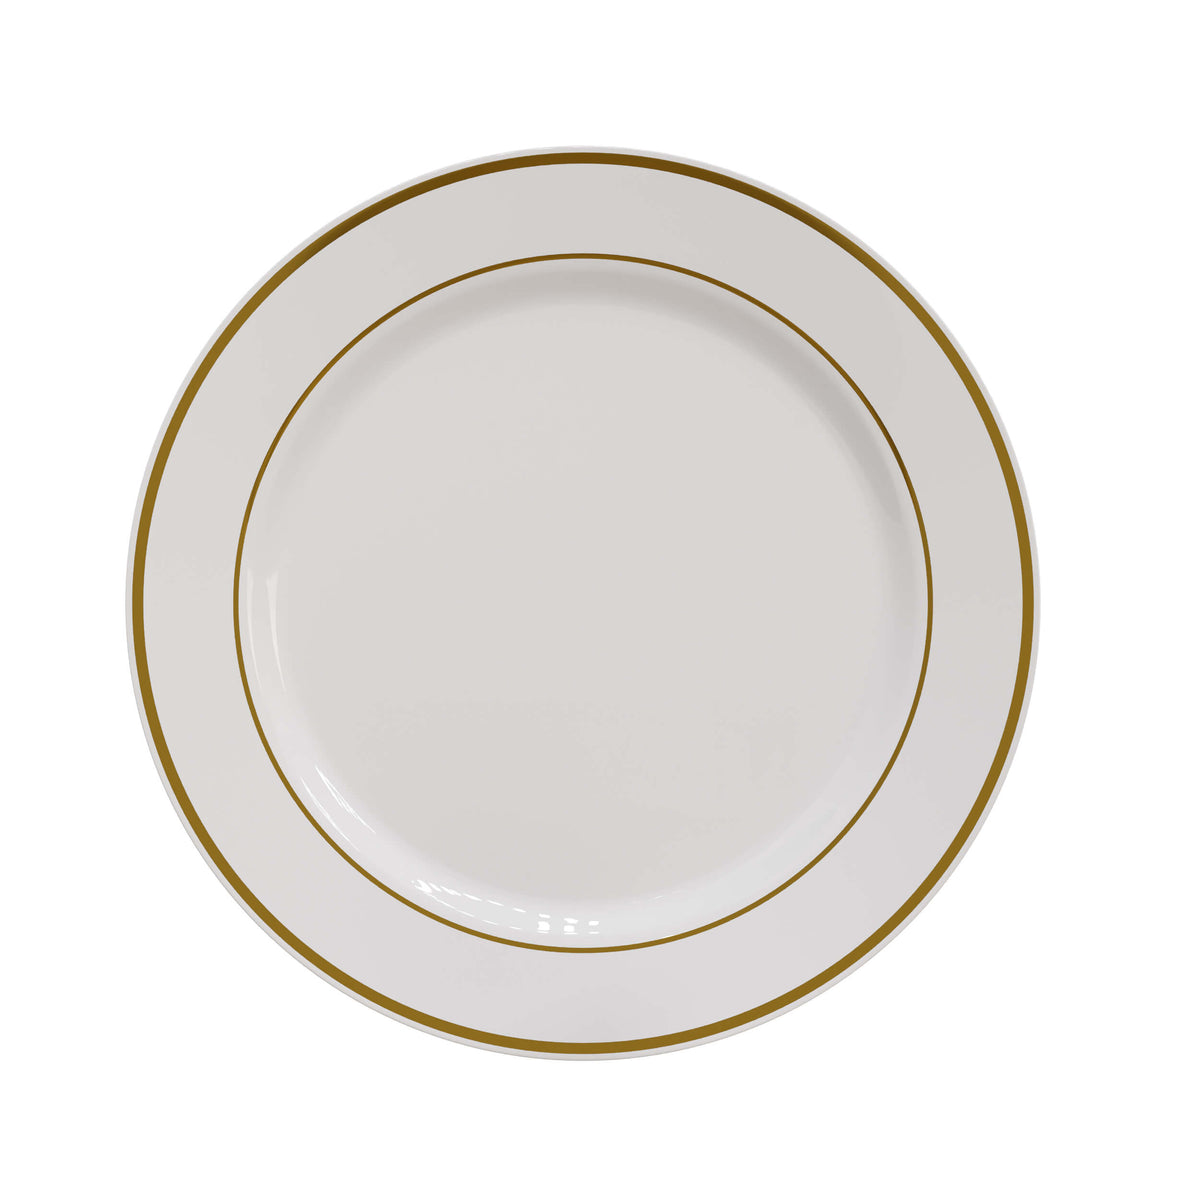 10.25 In. Cream/Gold Line Design Plates | 10 Count